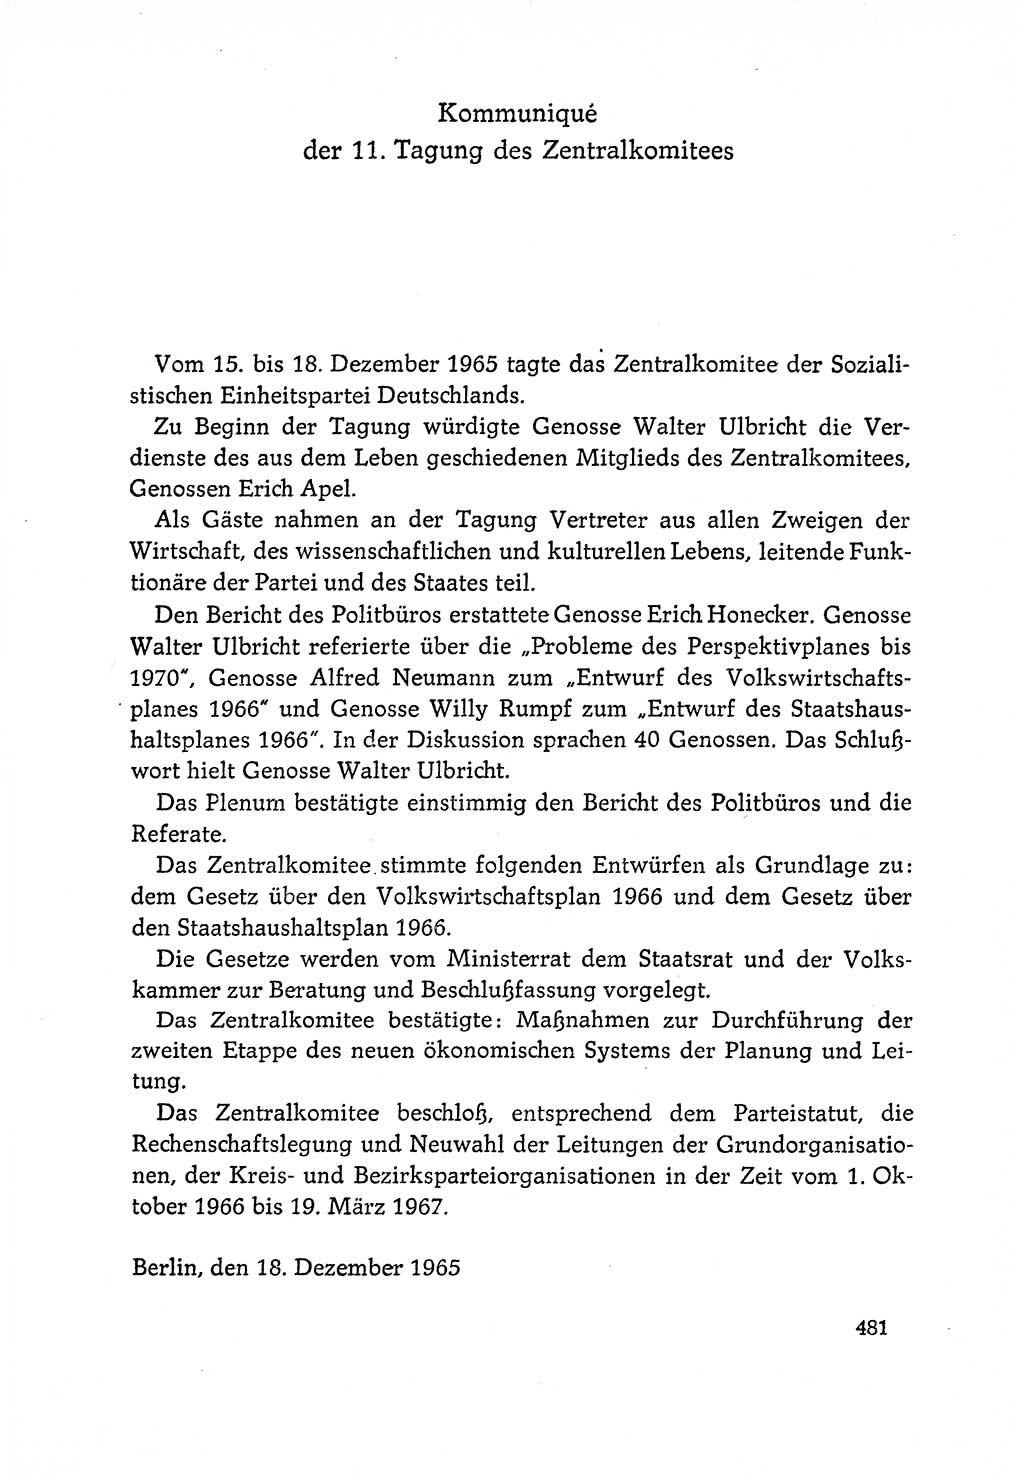 Dokumente der Sozialistischen Einheitspartei Deutschlands (SED) [Deutsche Demokratische Republik (DDR)] 1964-1965, Seite 481 (Dok. SED DDR 1964-1965, S. 481)